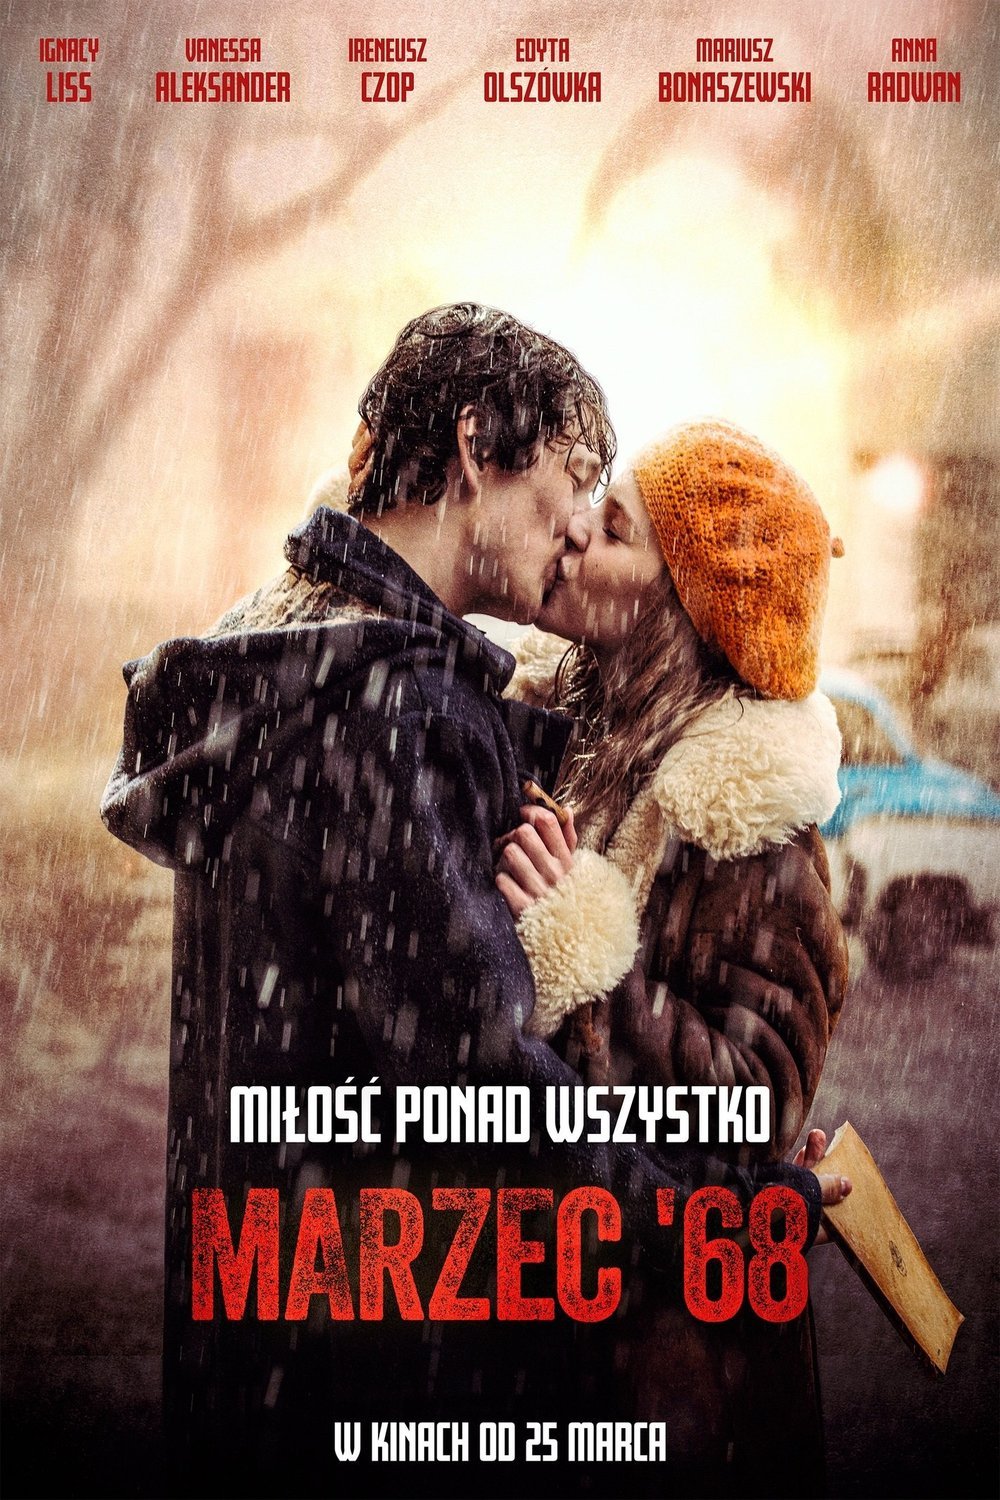 L'affiche originale du film March '68 en polonais